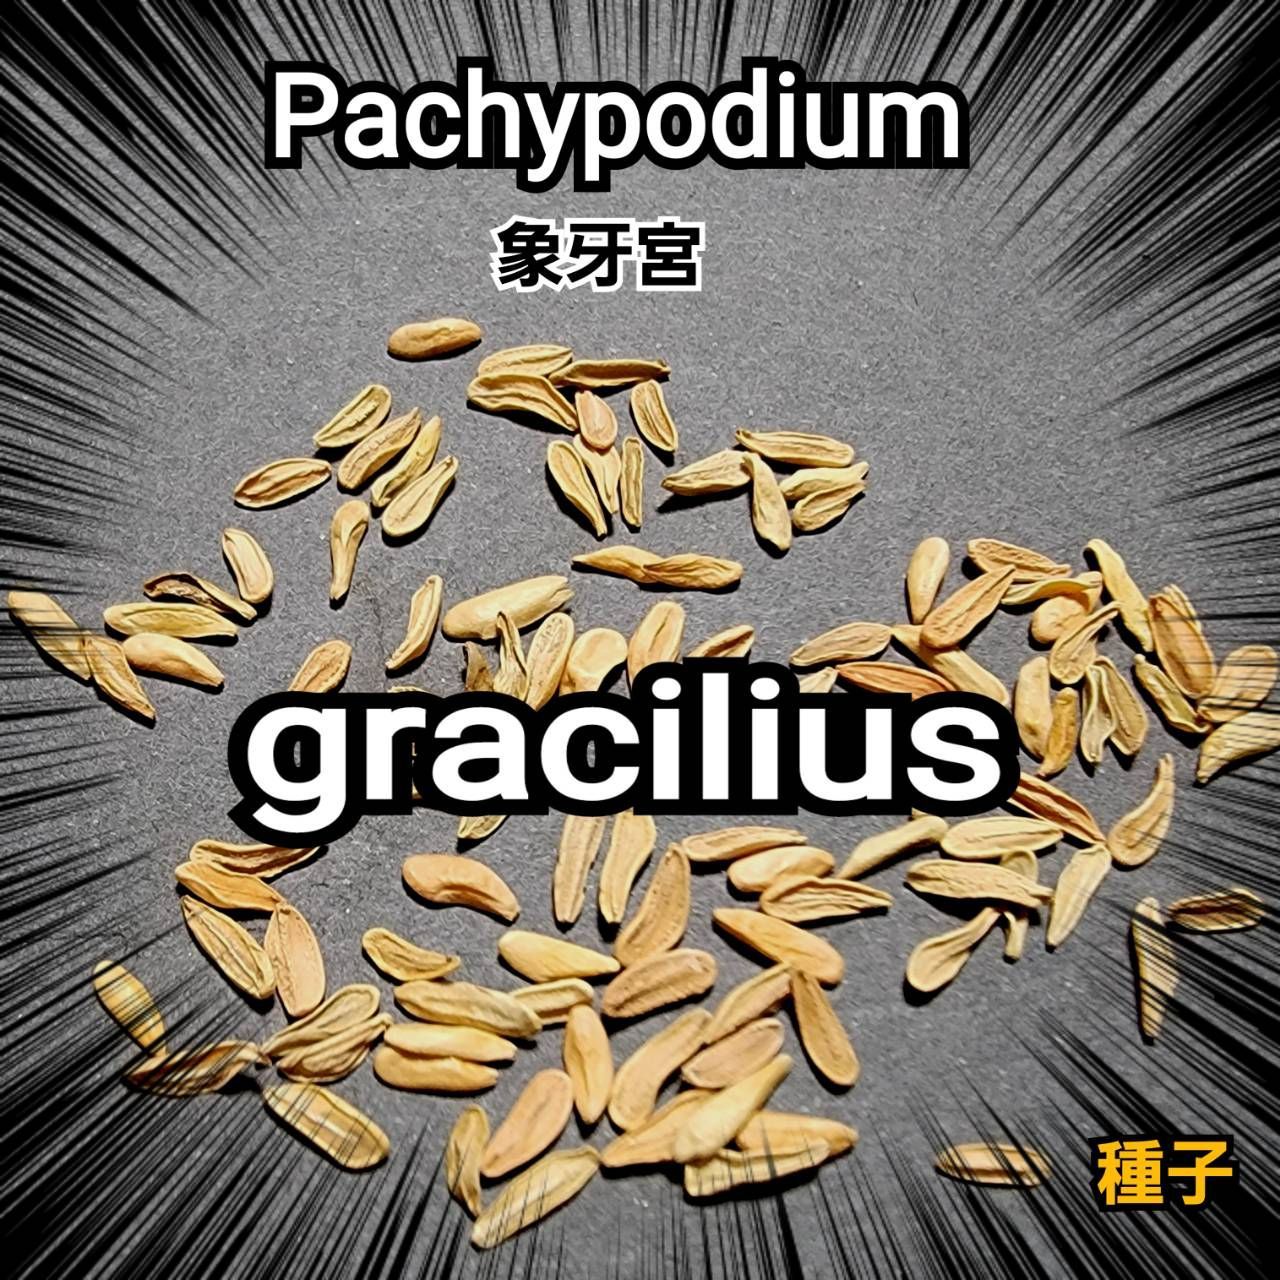 象牙宮/パキポディウム グラキリス pachypodium 種子 100粒